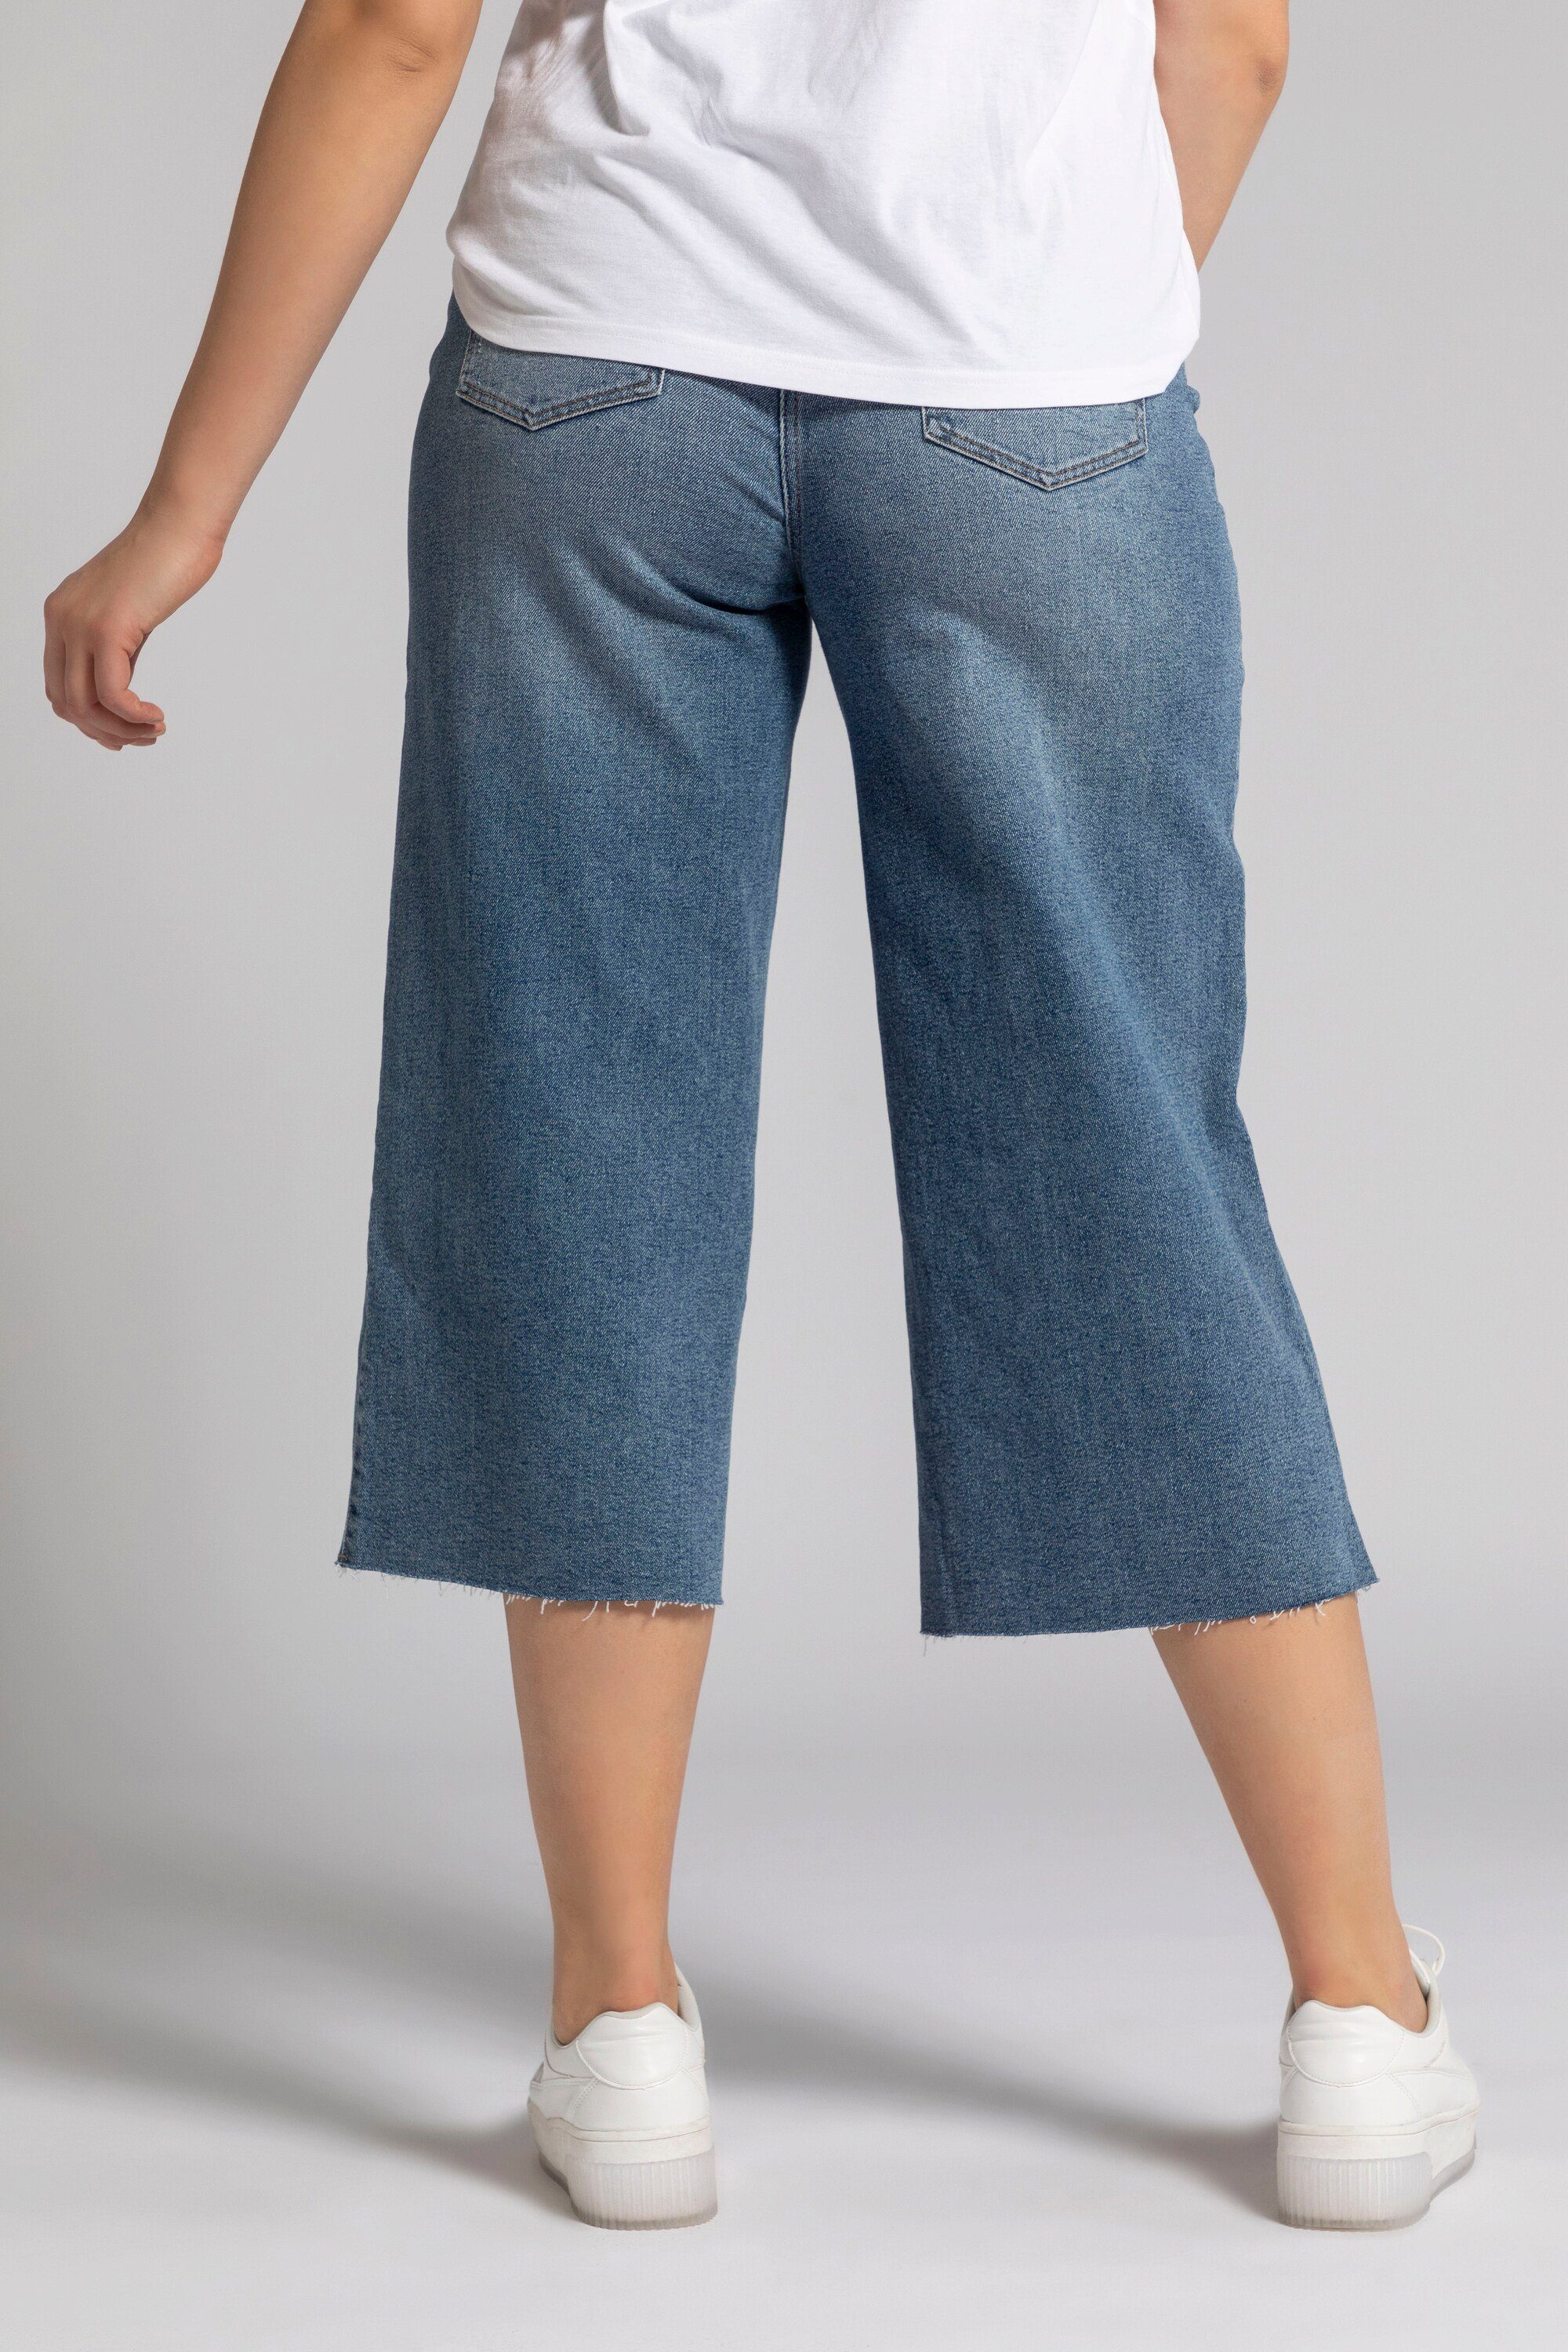 Elastikbund Bein Jeans weites Culottes Untold Studio Fransensaum Culotte